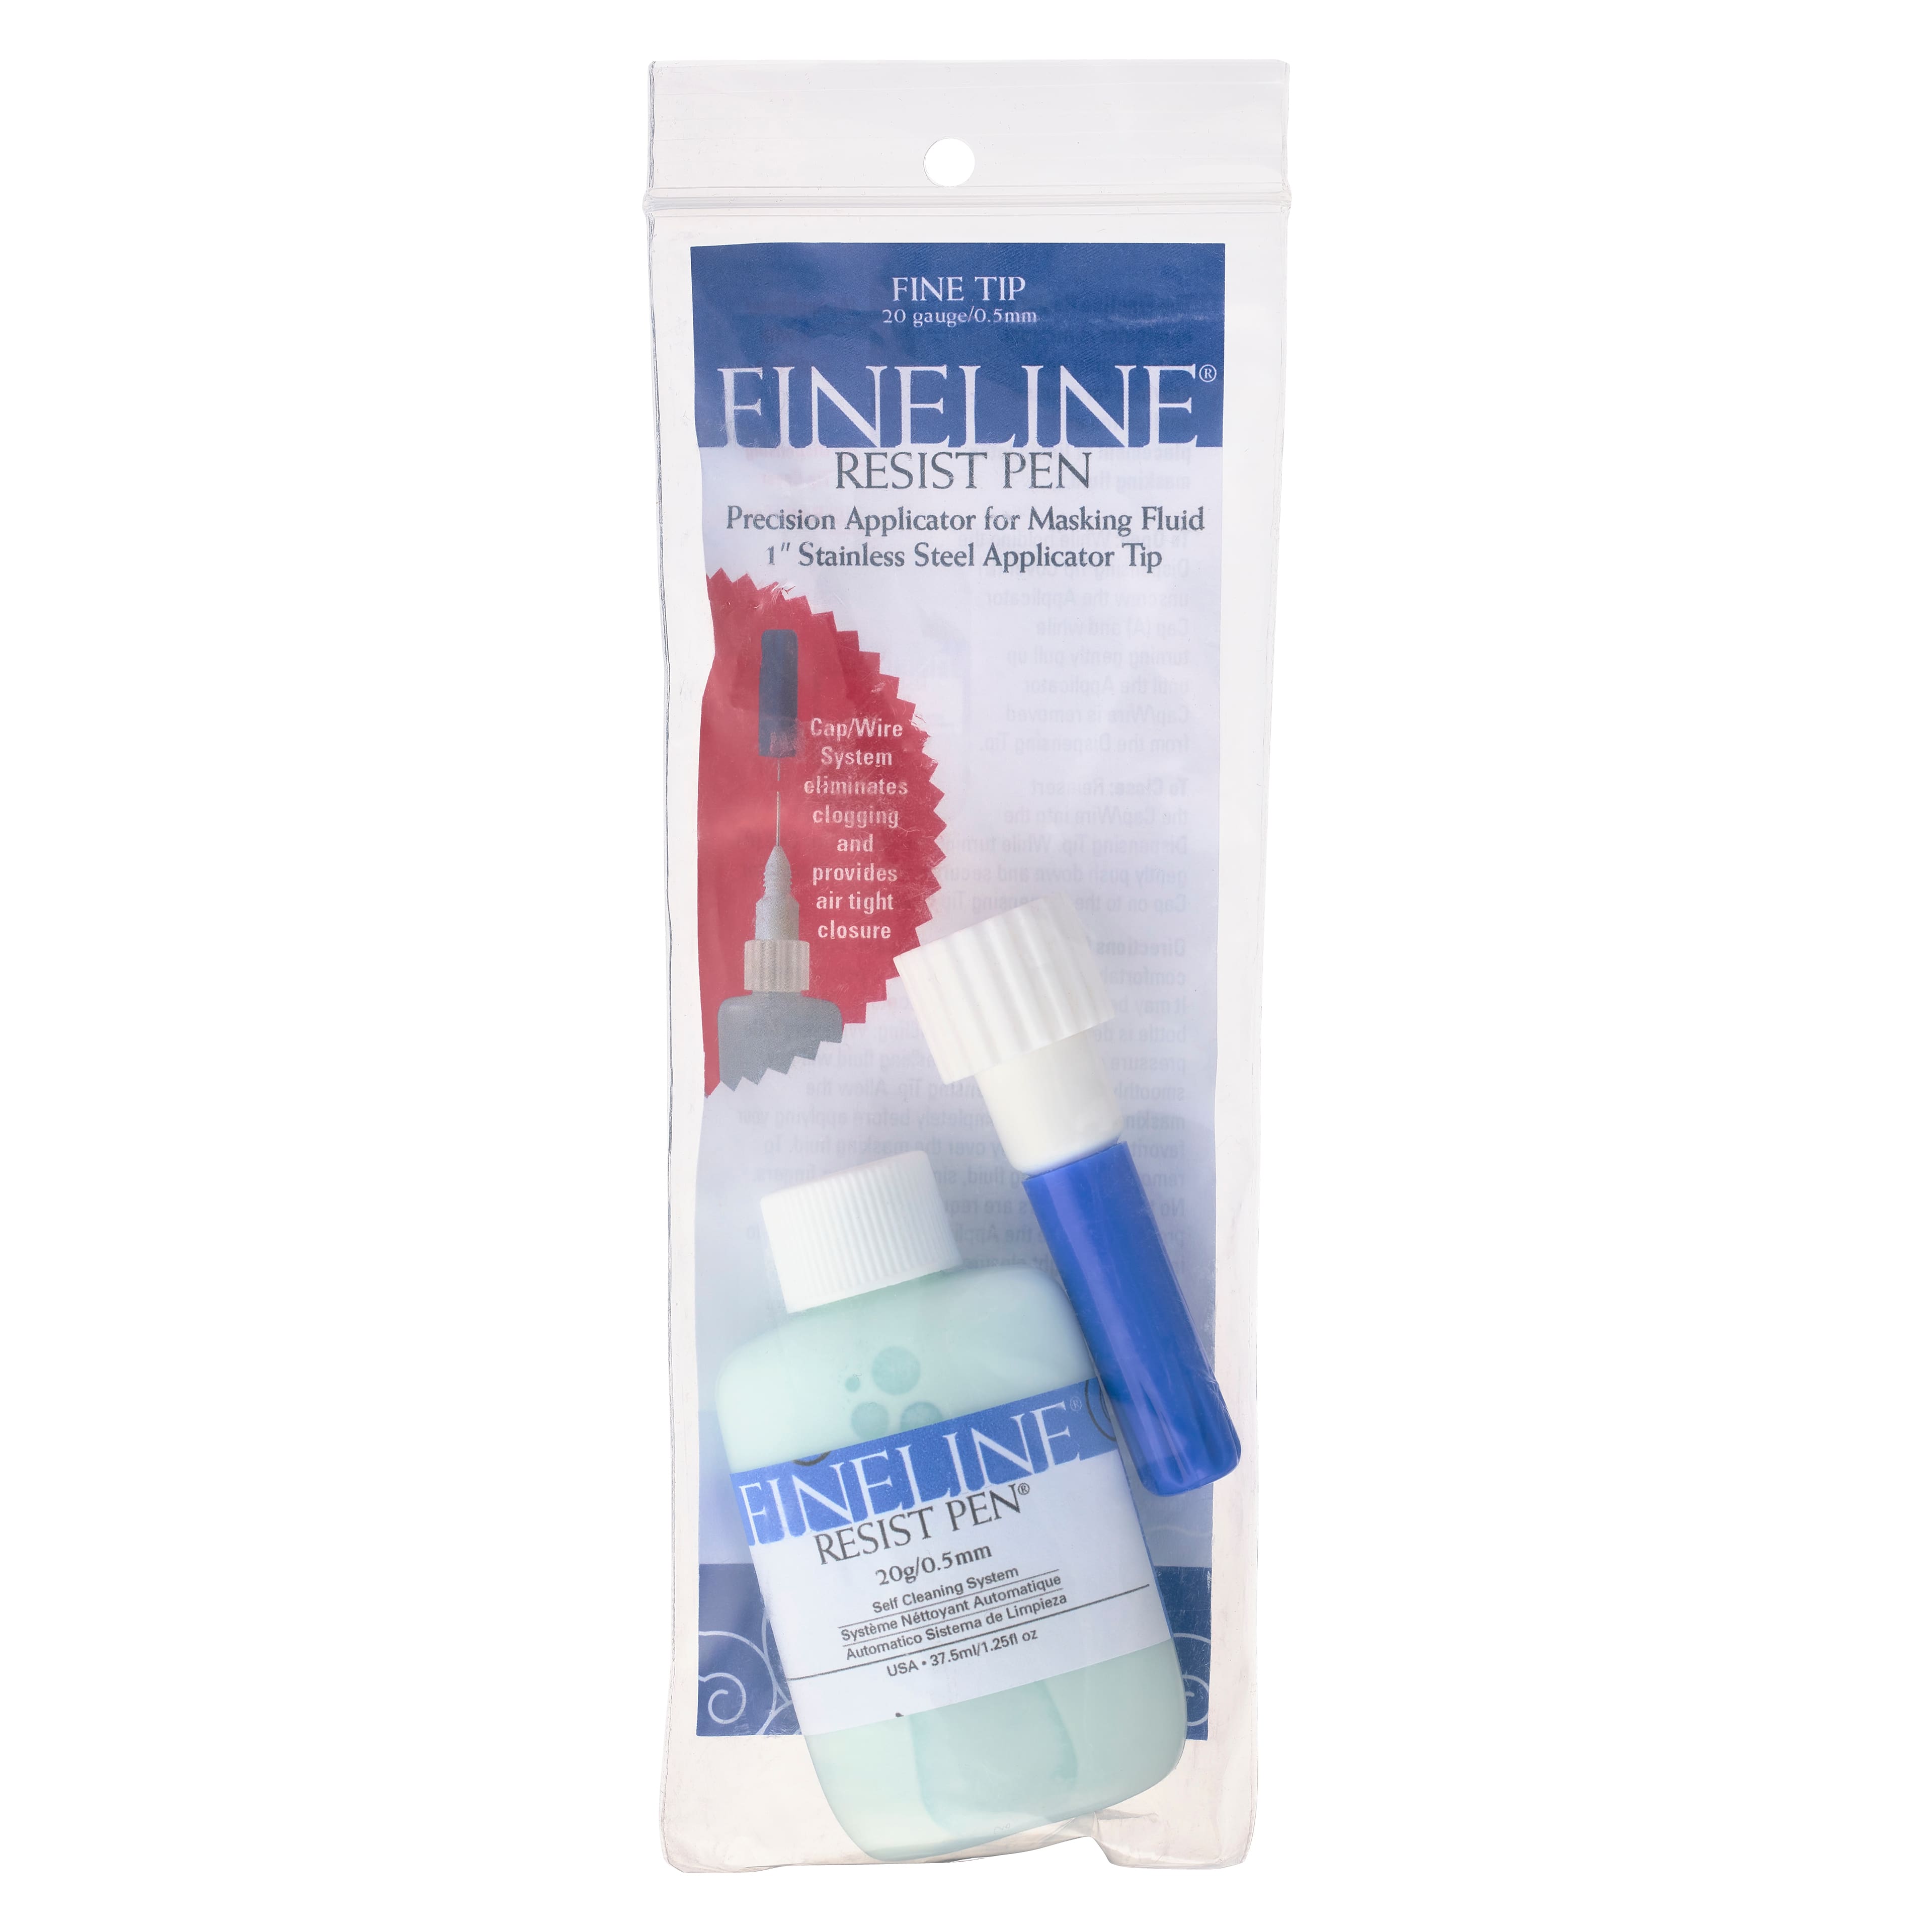 Fineline Masking Fluid Pen Applicator